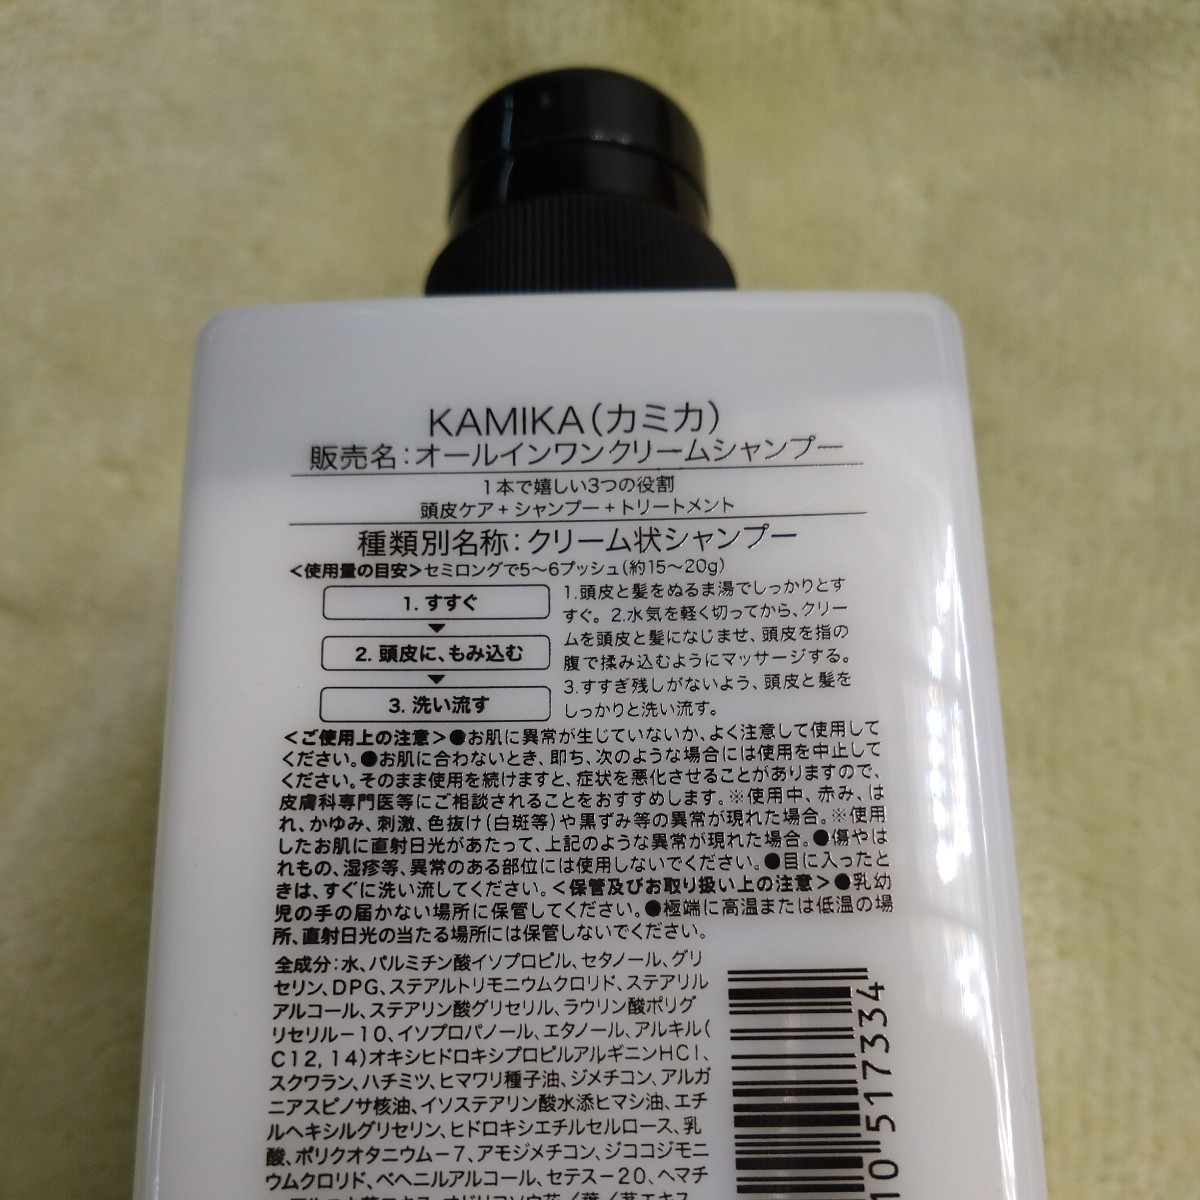 【未使用品】KAMIKA (カミカ) オールインワンクリームシャンプー 400g _画像2